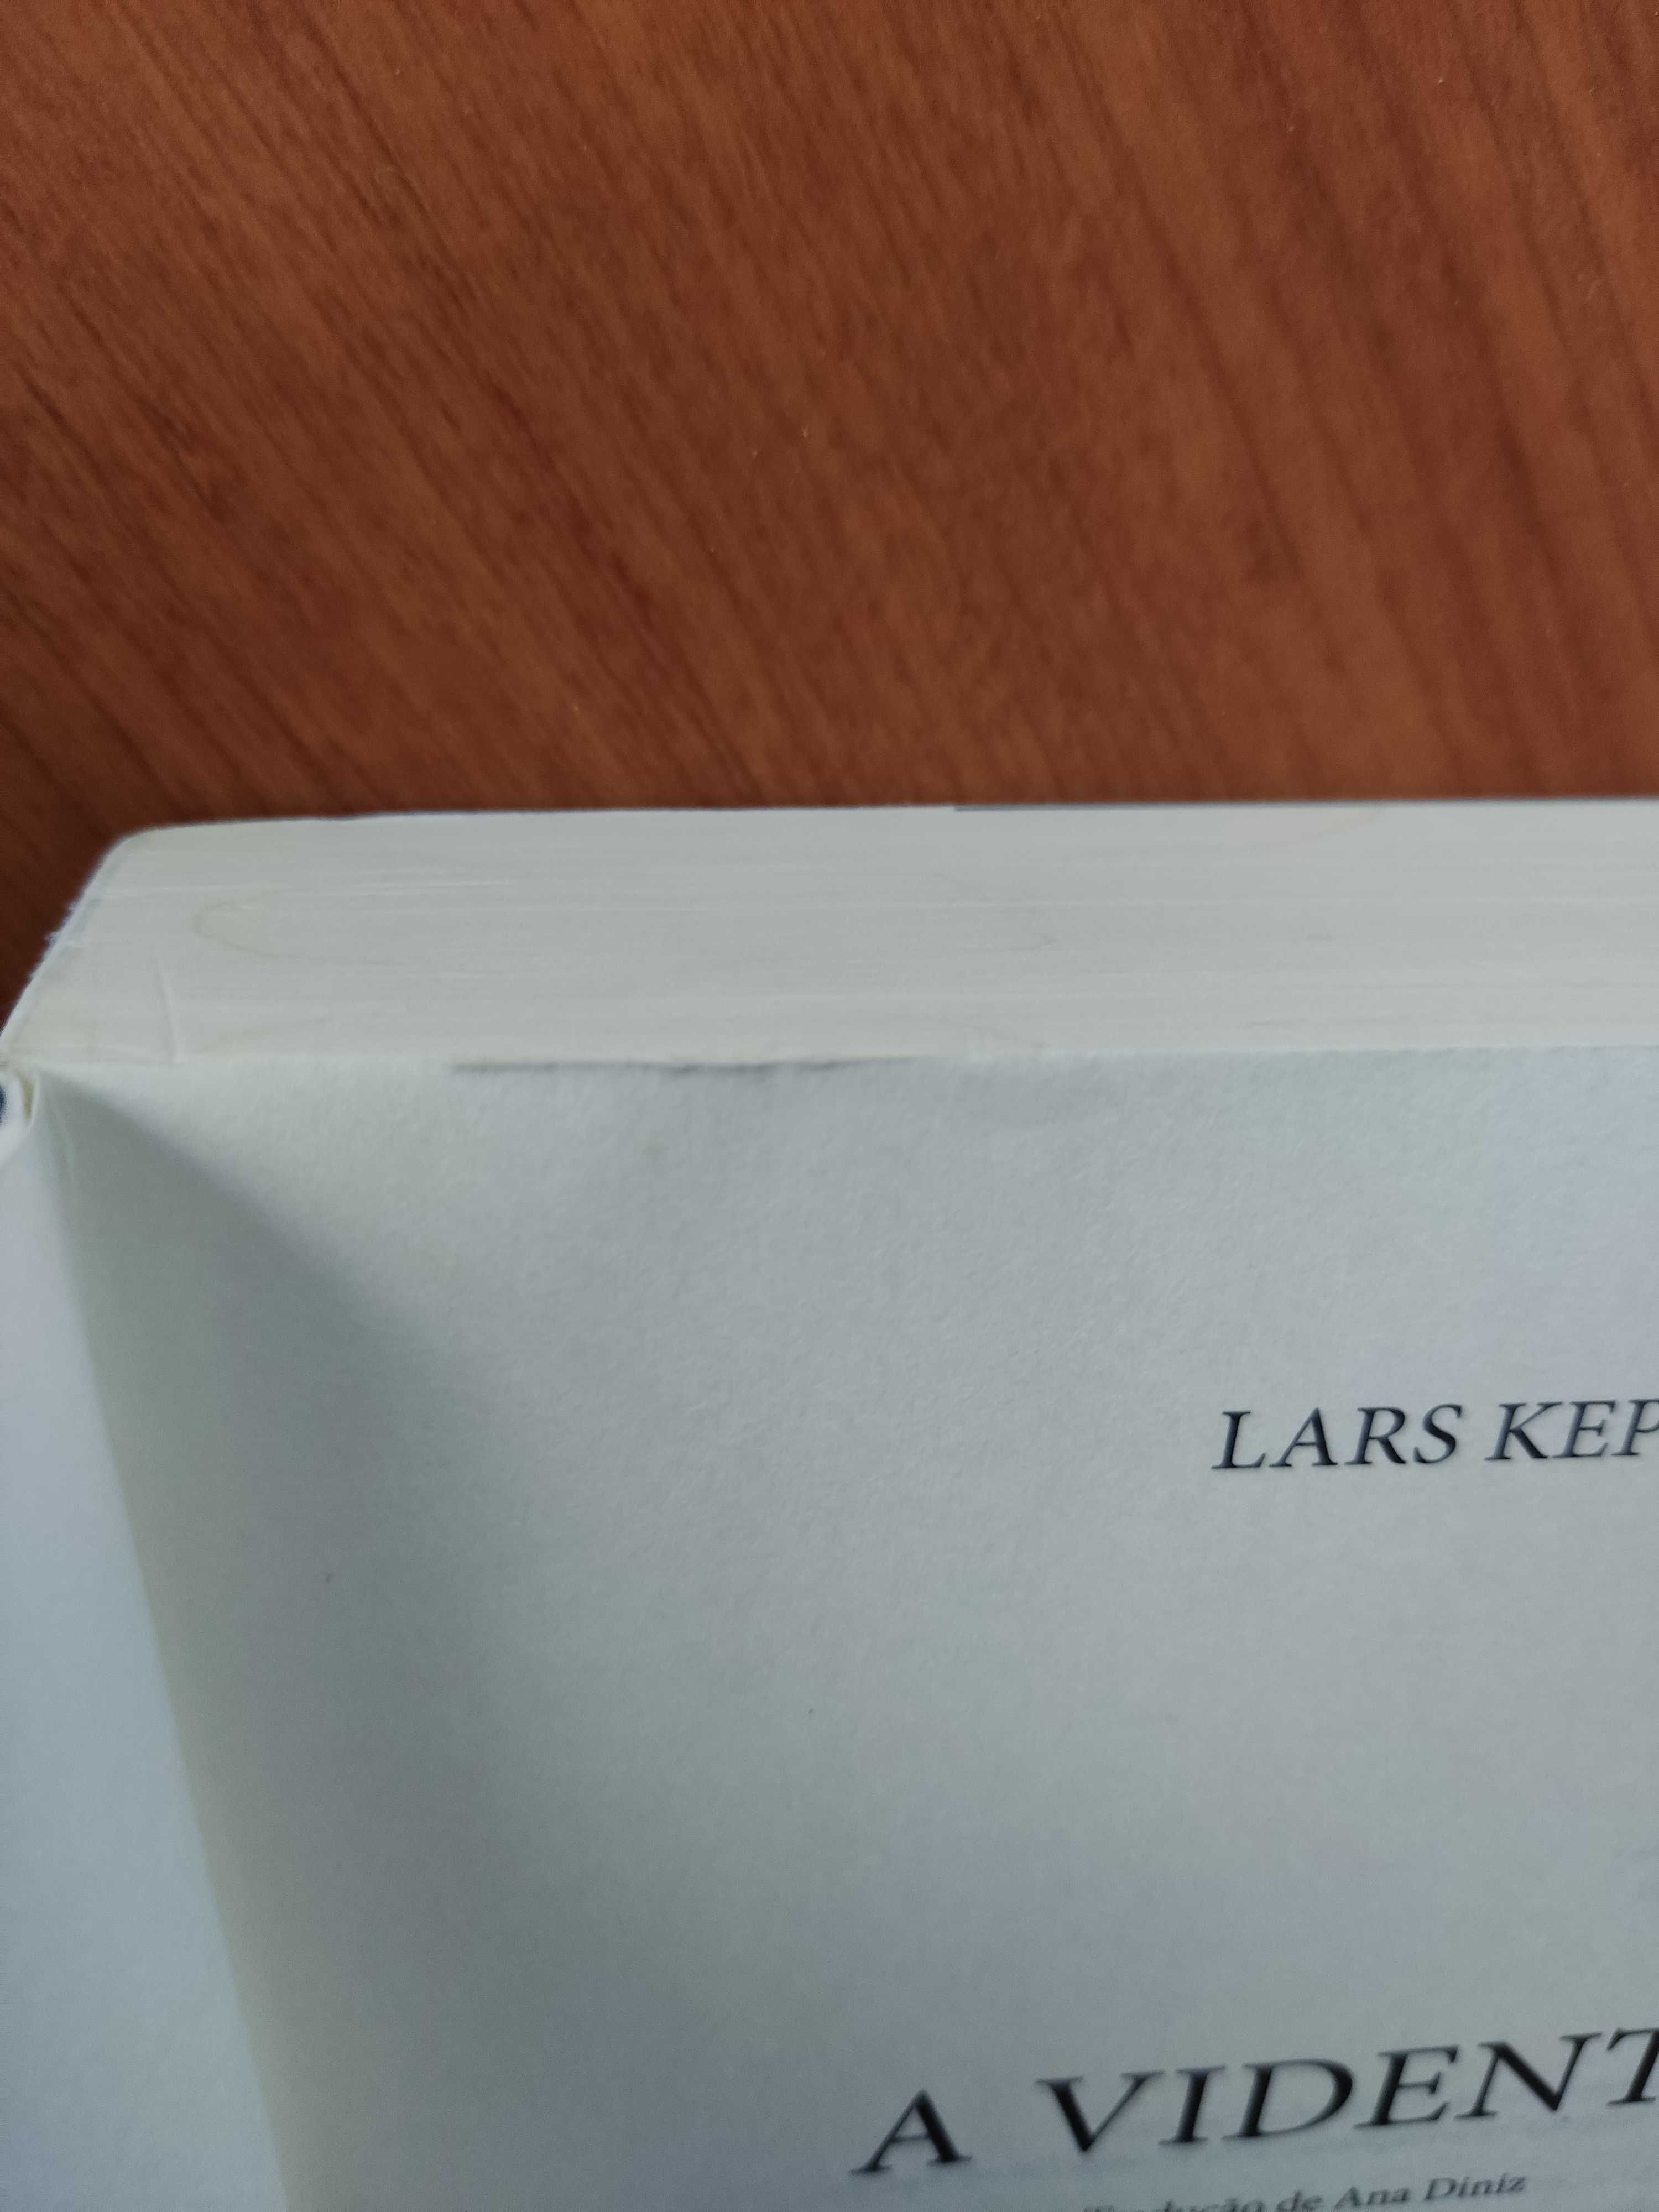 Livro "A Vidente" de Lars Kepler